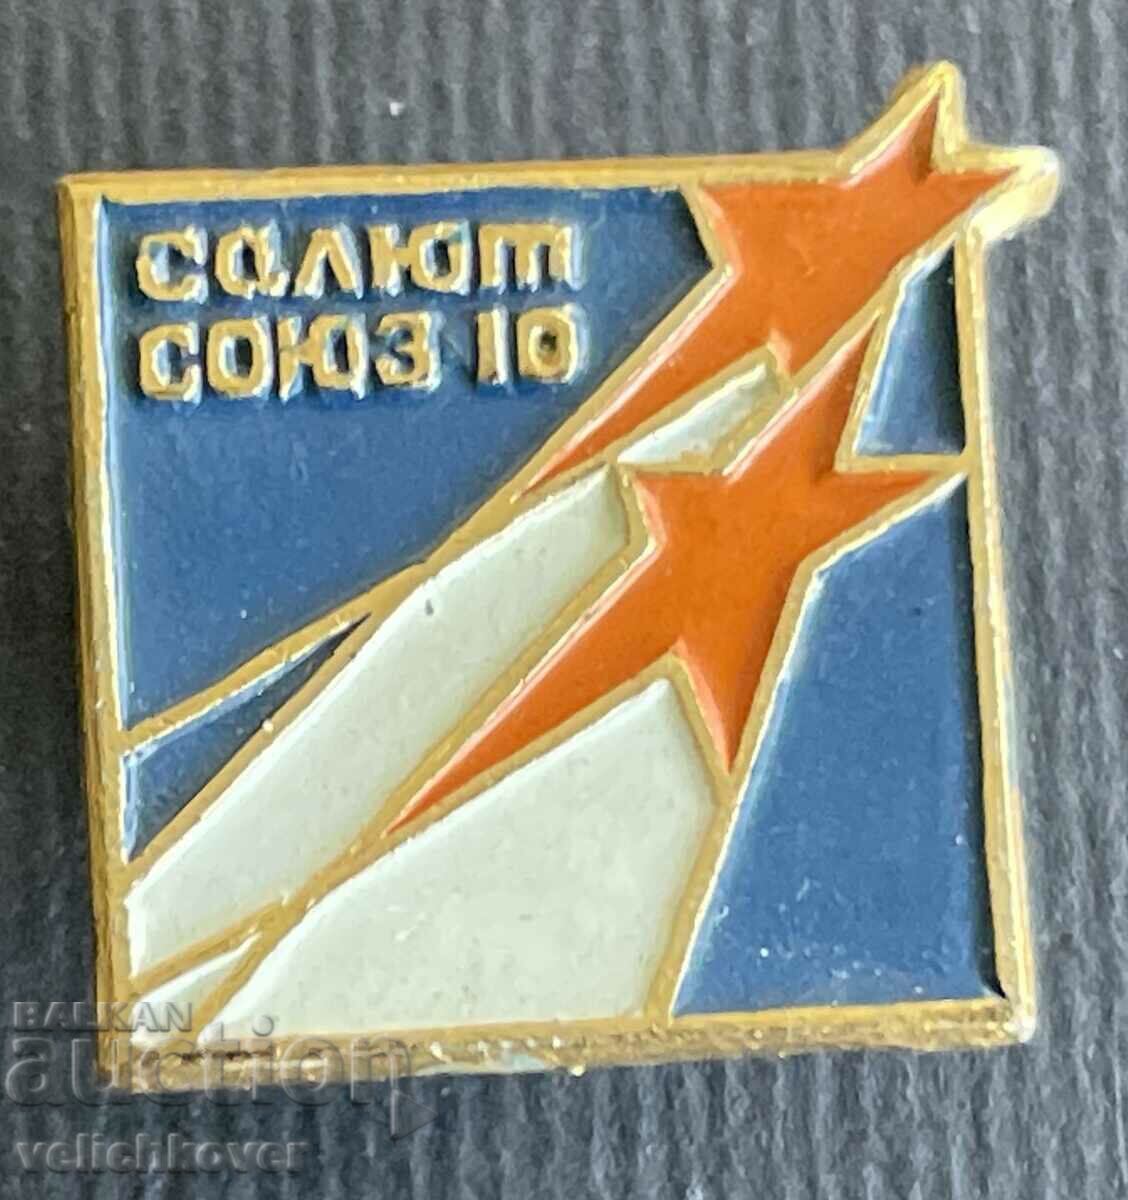 36186 ΕΣΣΔ διαστημική διαστημική πτήση Salyut Soyuz 10